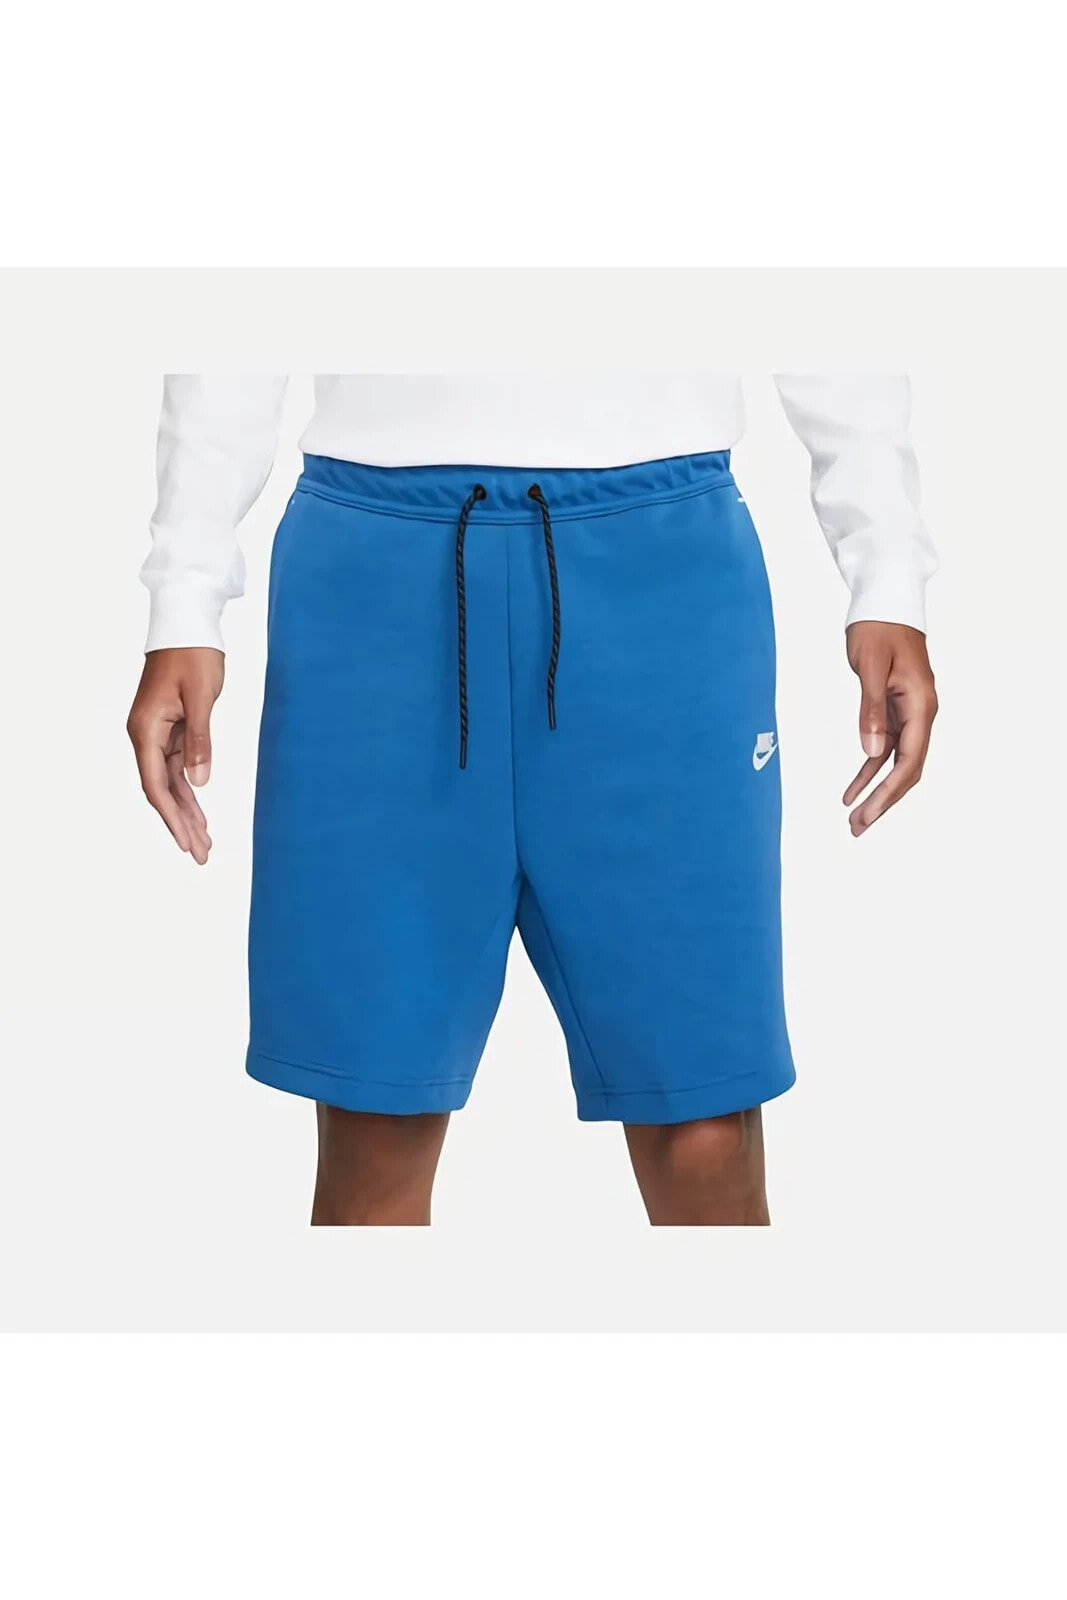 Sportswear Tech Fleece Mavi Erkek Şortu Cu4503-407